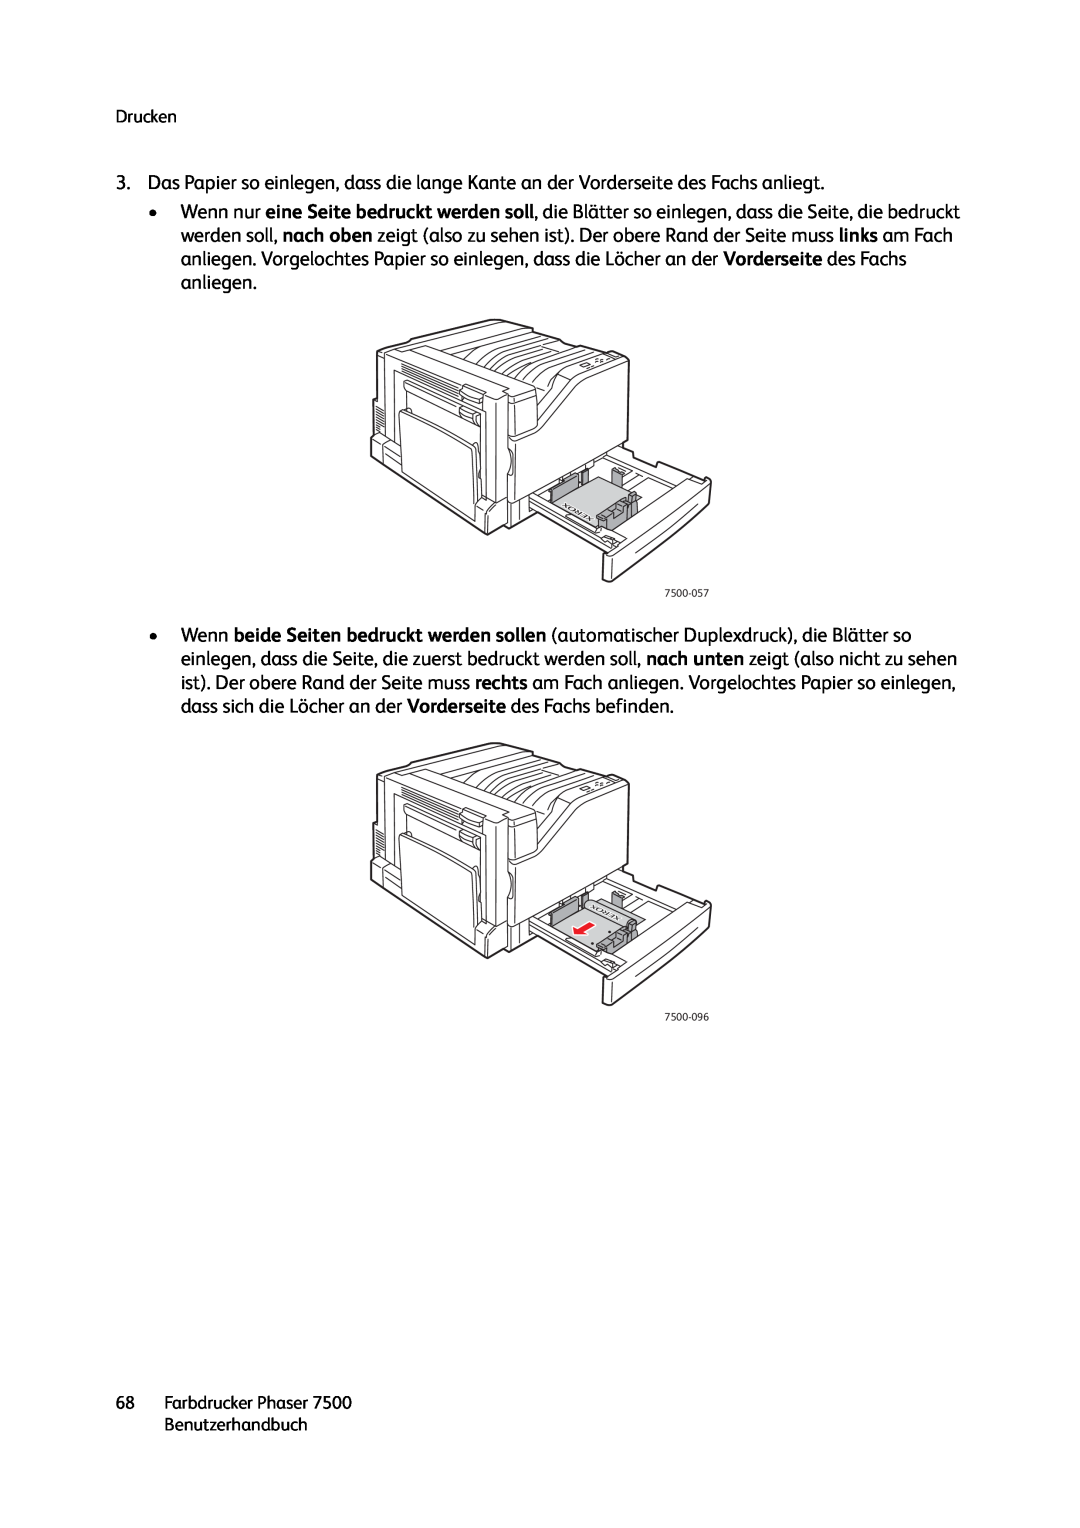 Xerox 7500 color printer manual Drucken, 68Farbdrucker Phaser 7500 Benutzerhandbuch 